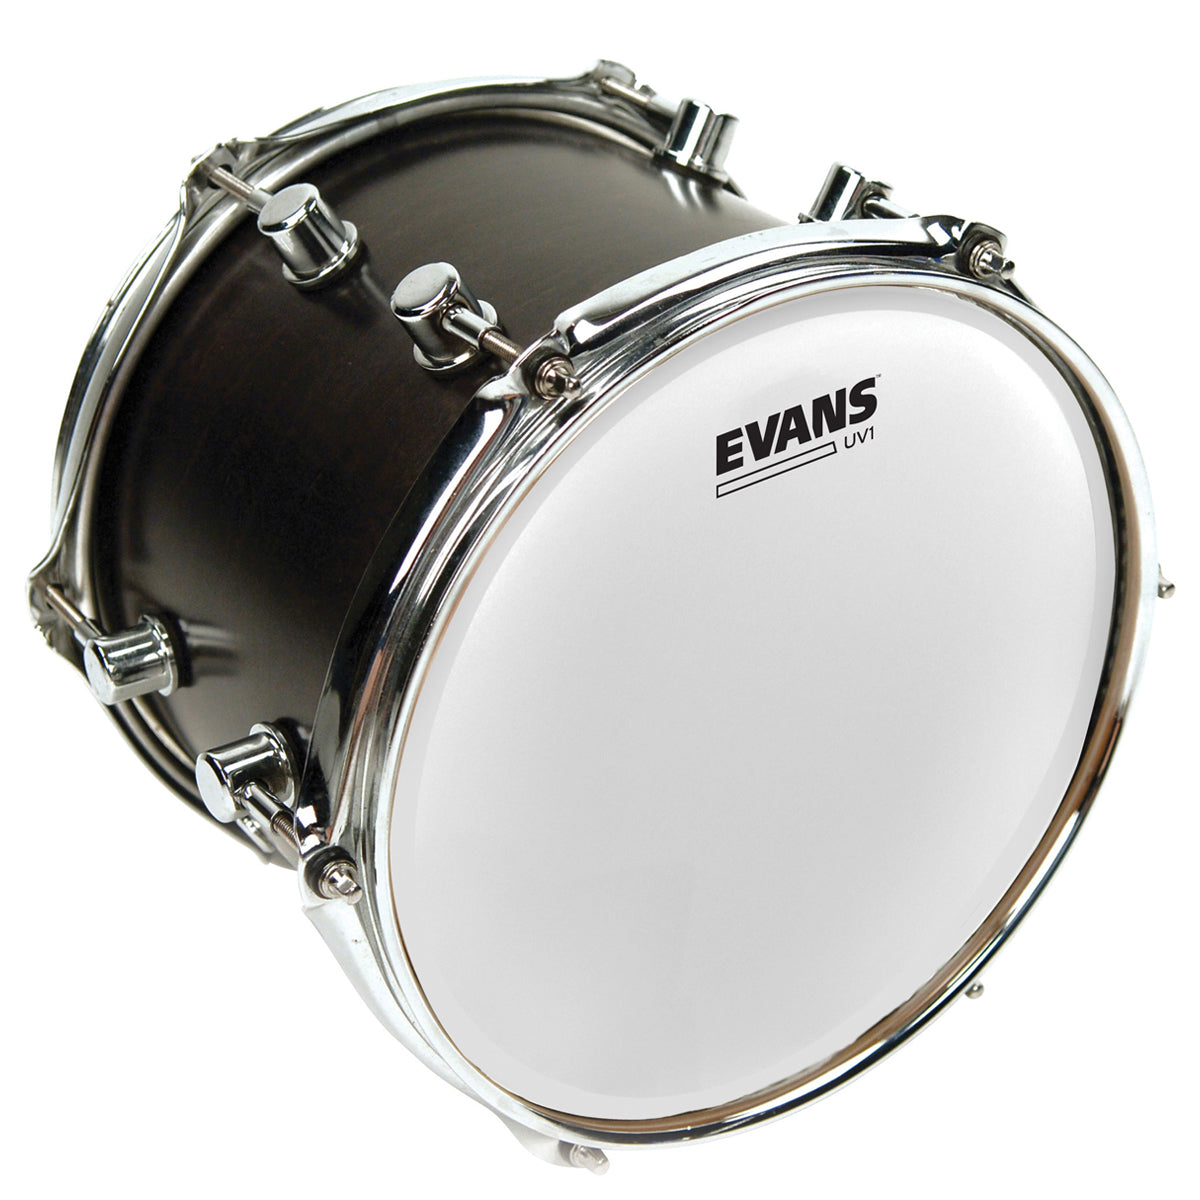 Evans B12UV1 UV1 Coated 12" Drumhead